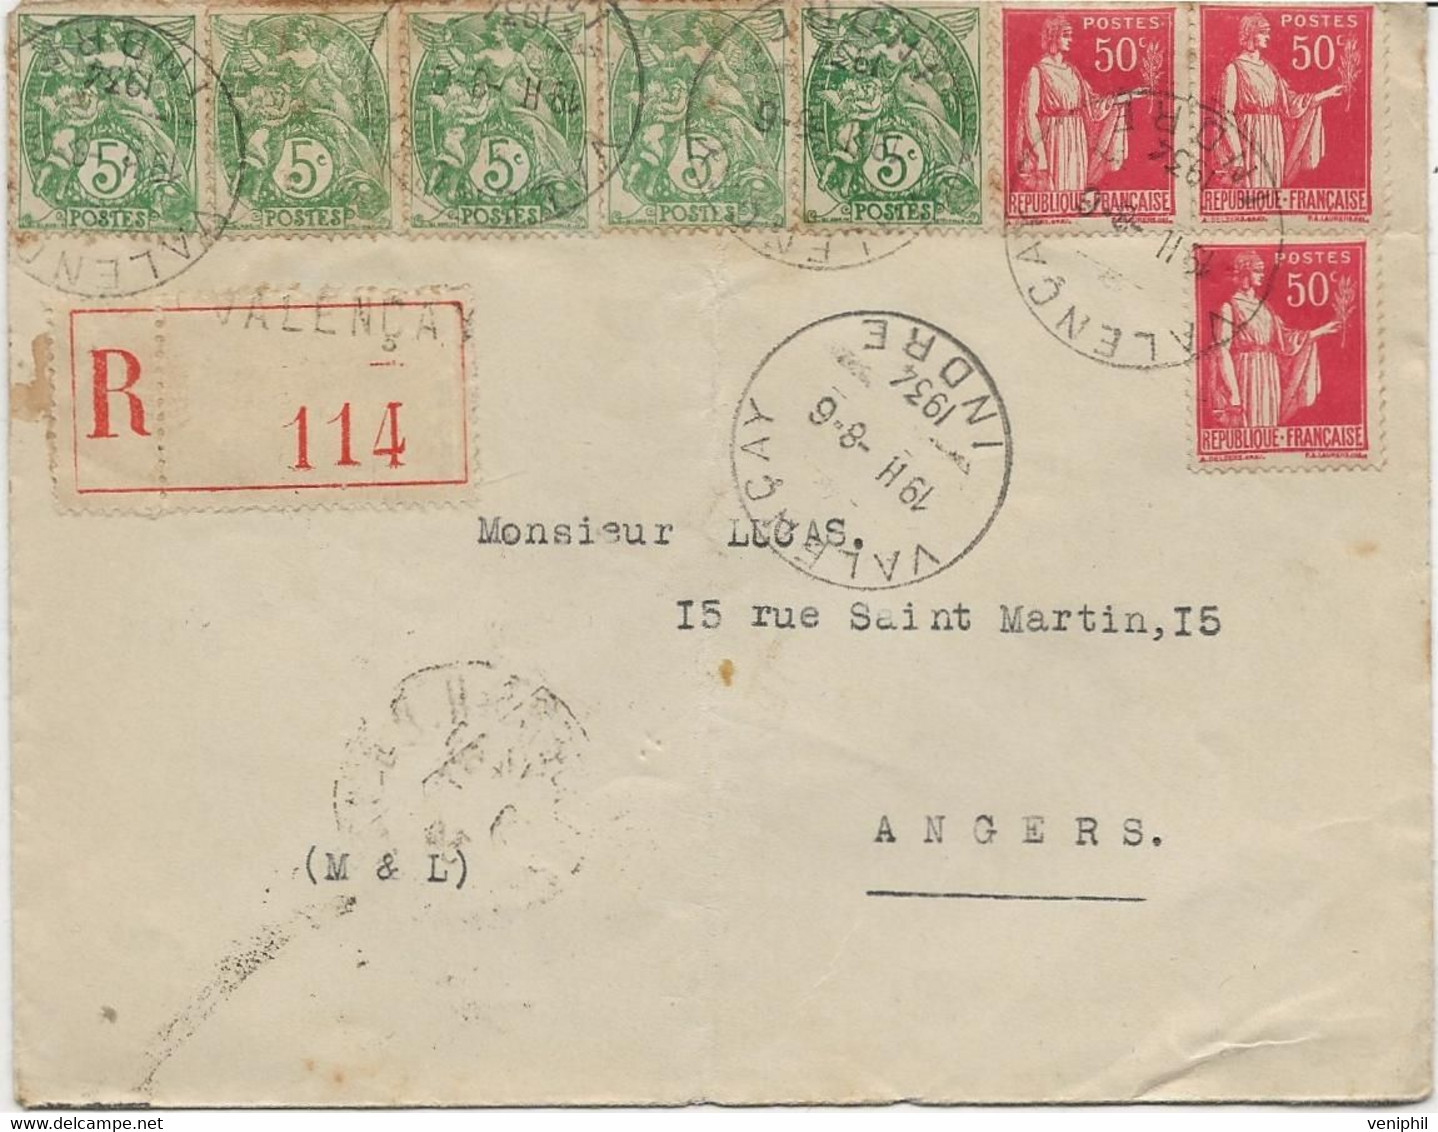 LETTRE AFFRANCHIE N° 111 - 5 EXEMPLAIRES + N° 283 X3 - OBLITEREE CAD VALENCAY -INDRE -1934 - Manual Postmarks